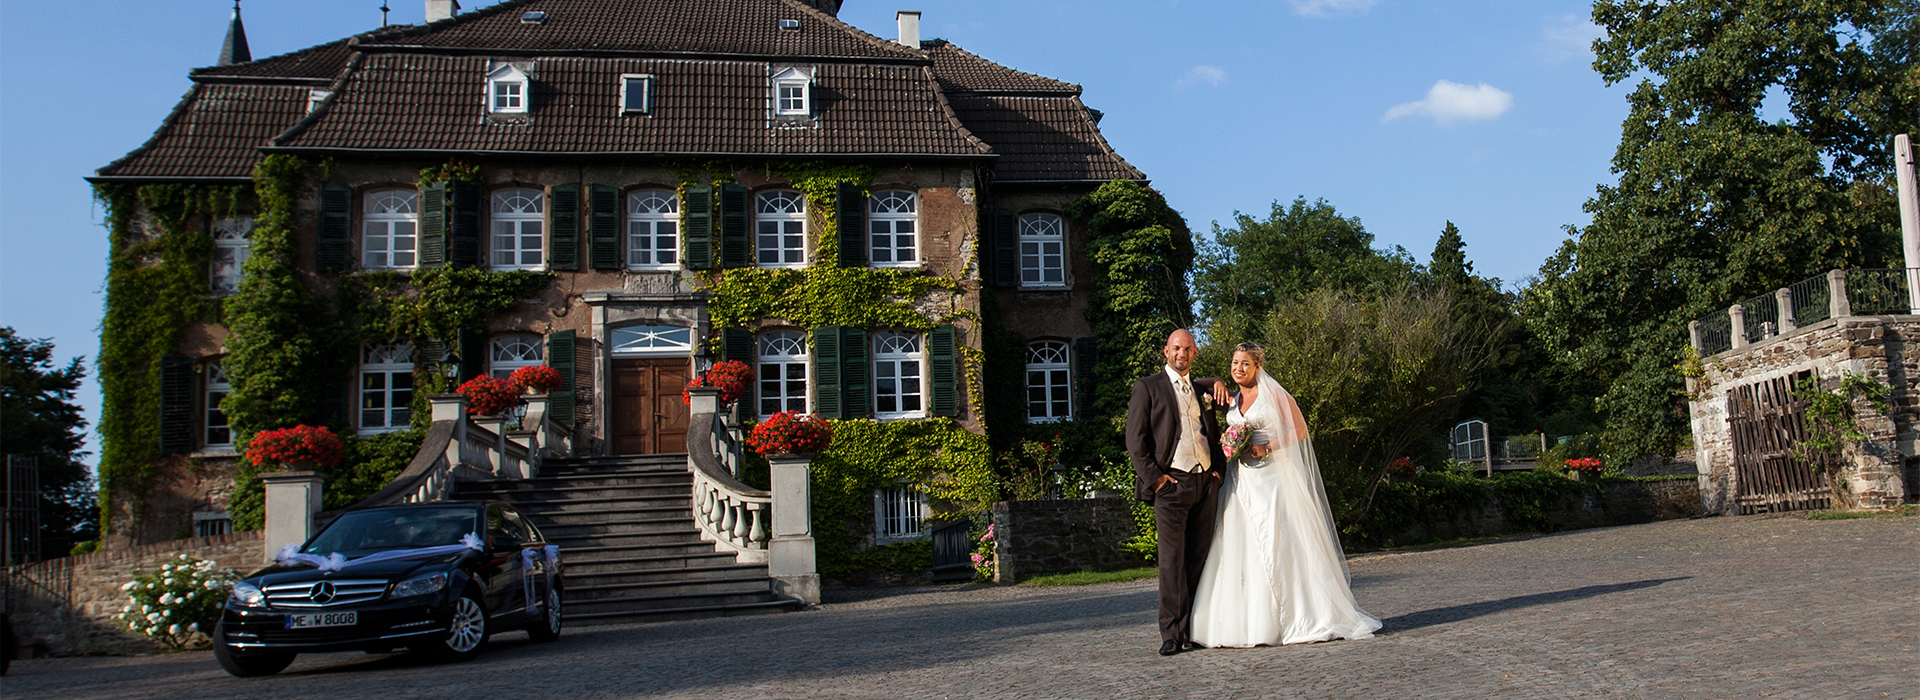 Hochzeitsfotografie von Stephi & Martin in Neviges, Mettmann und Ratingen